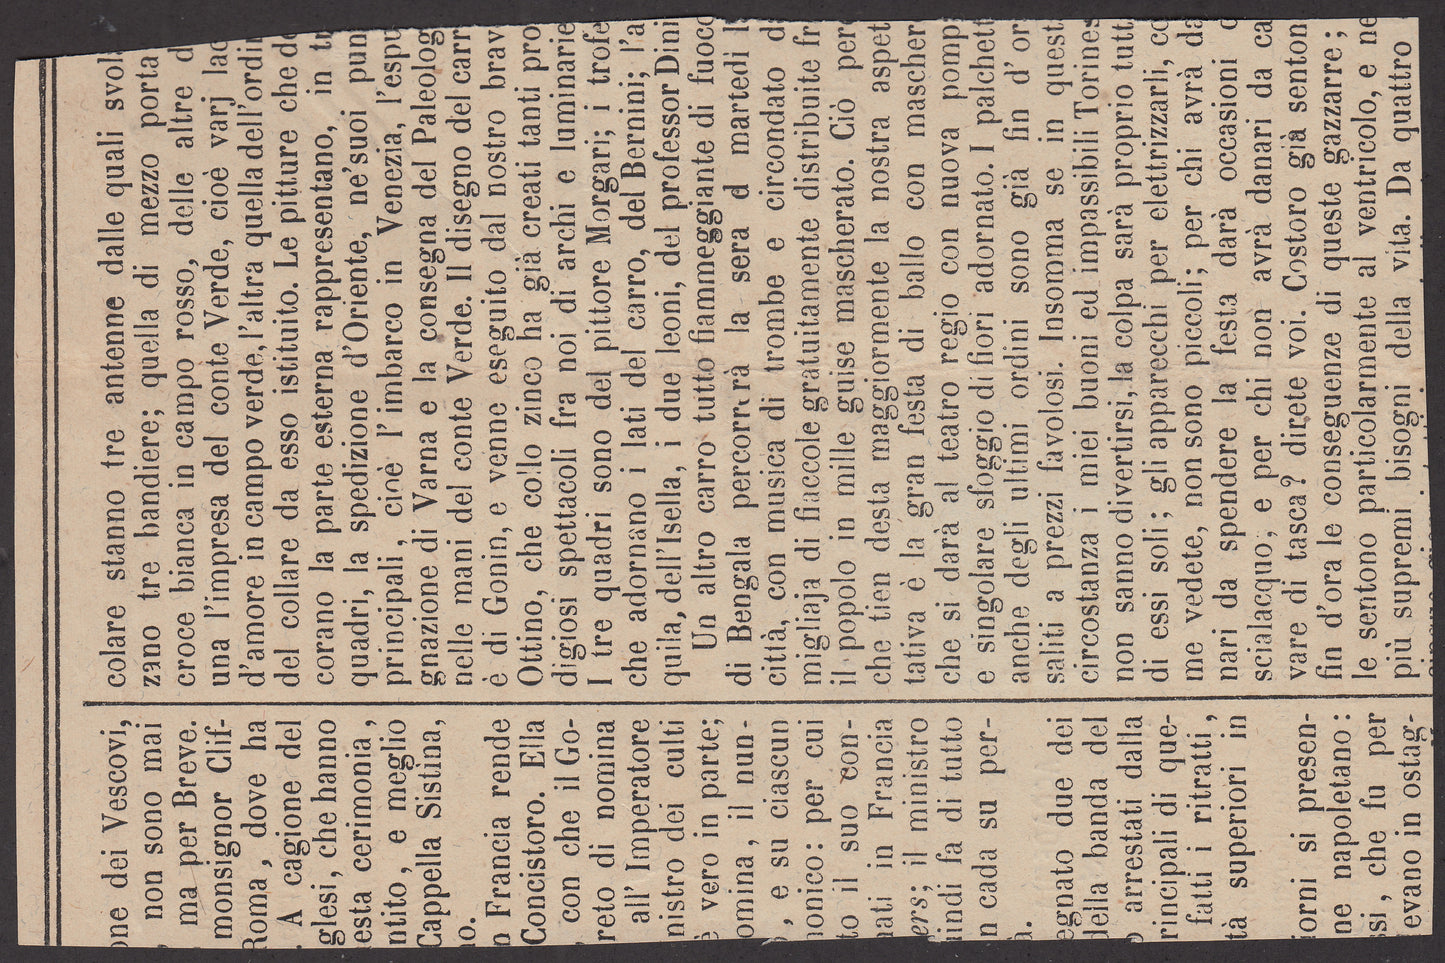 1853 - Segnatasse per giornali c. 9 azzurro scuro su grande frammento, esemplare splendido, uno dei più belli noti su supporto. (2)